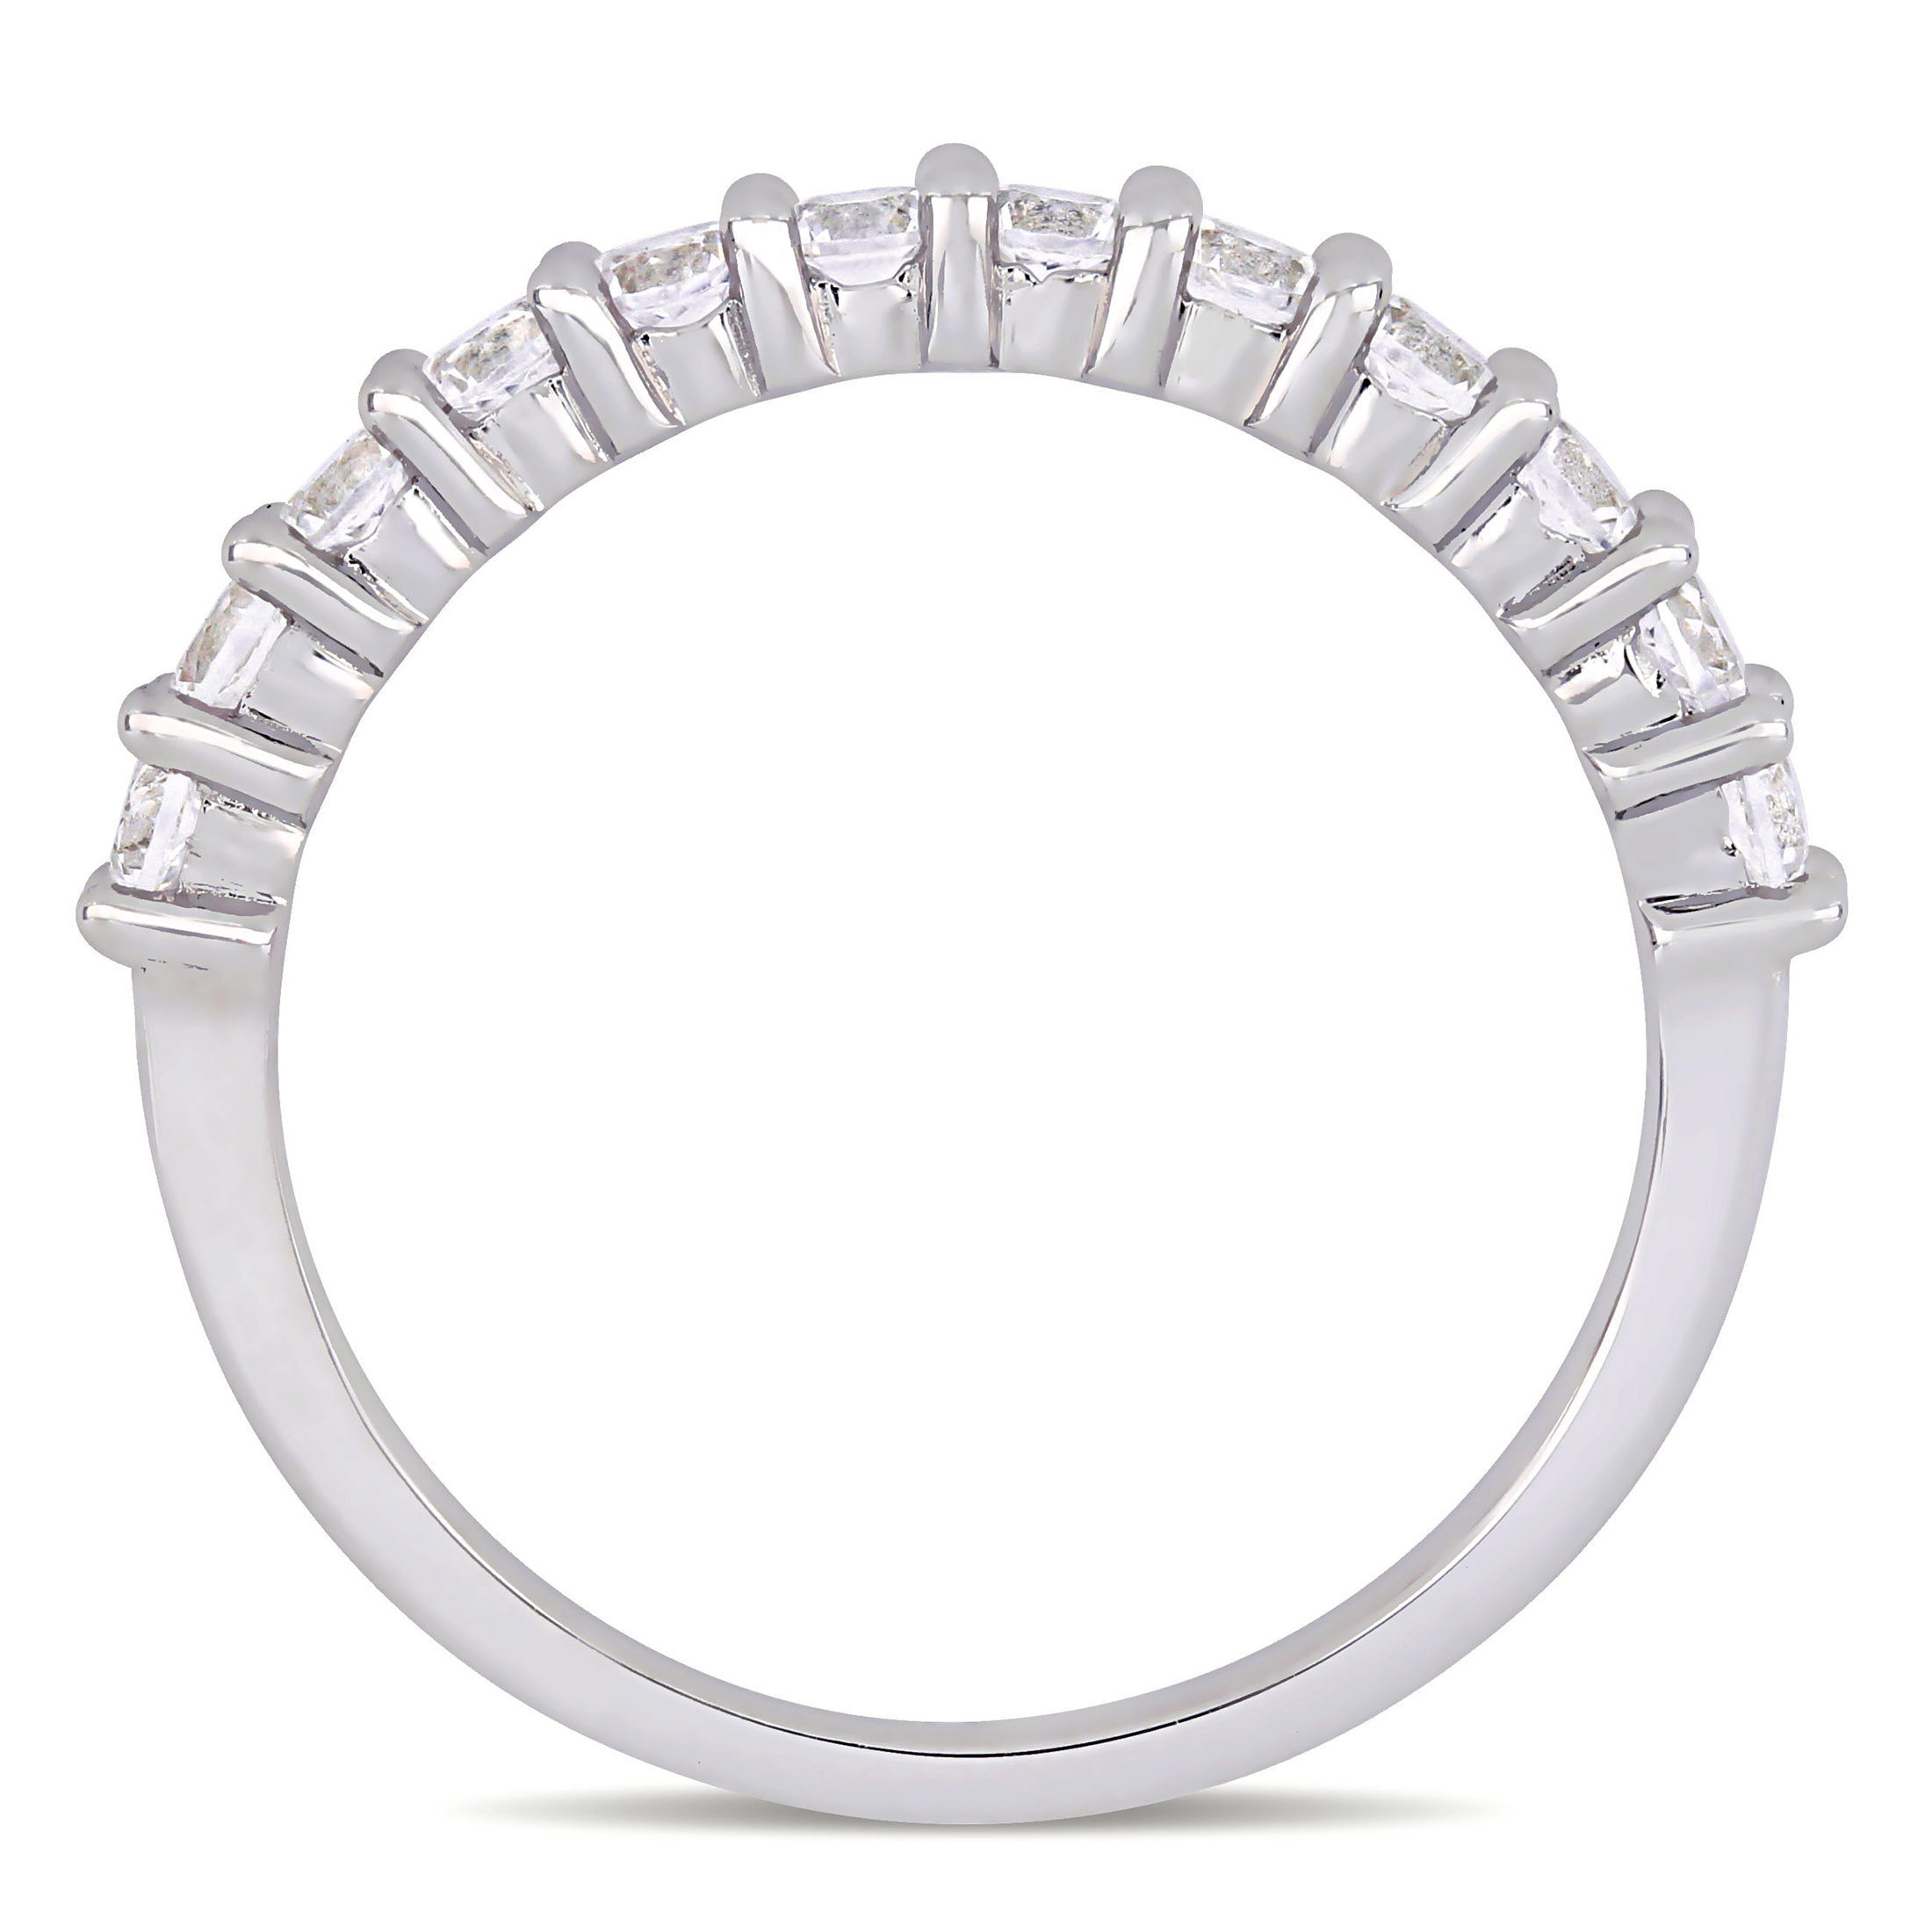 Everly Women's TDW 1 1/10 Carat Diamond 10kt White Gold Wedding Band with Shared Prongs Setting (G-H, I2-I3) - image 5 of 8